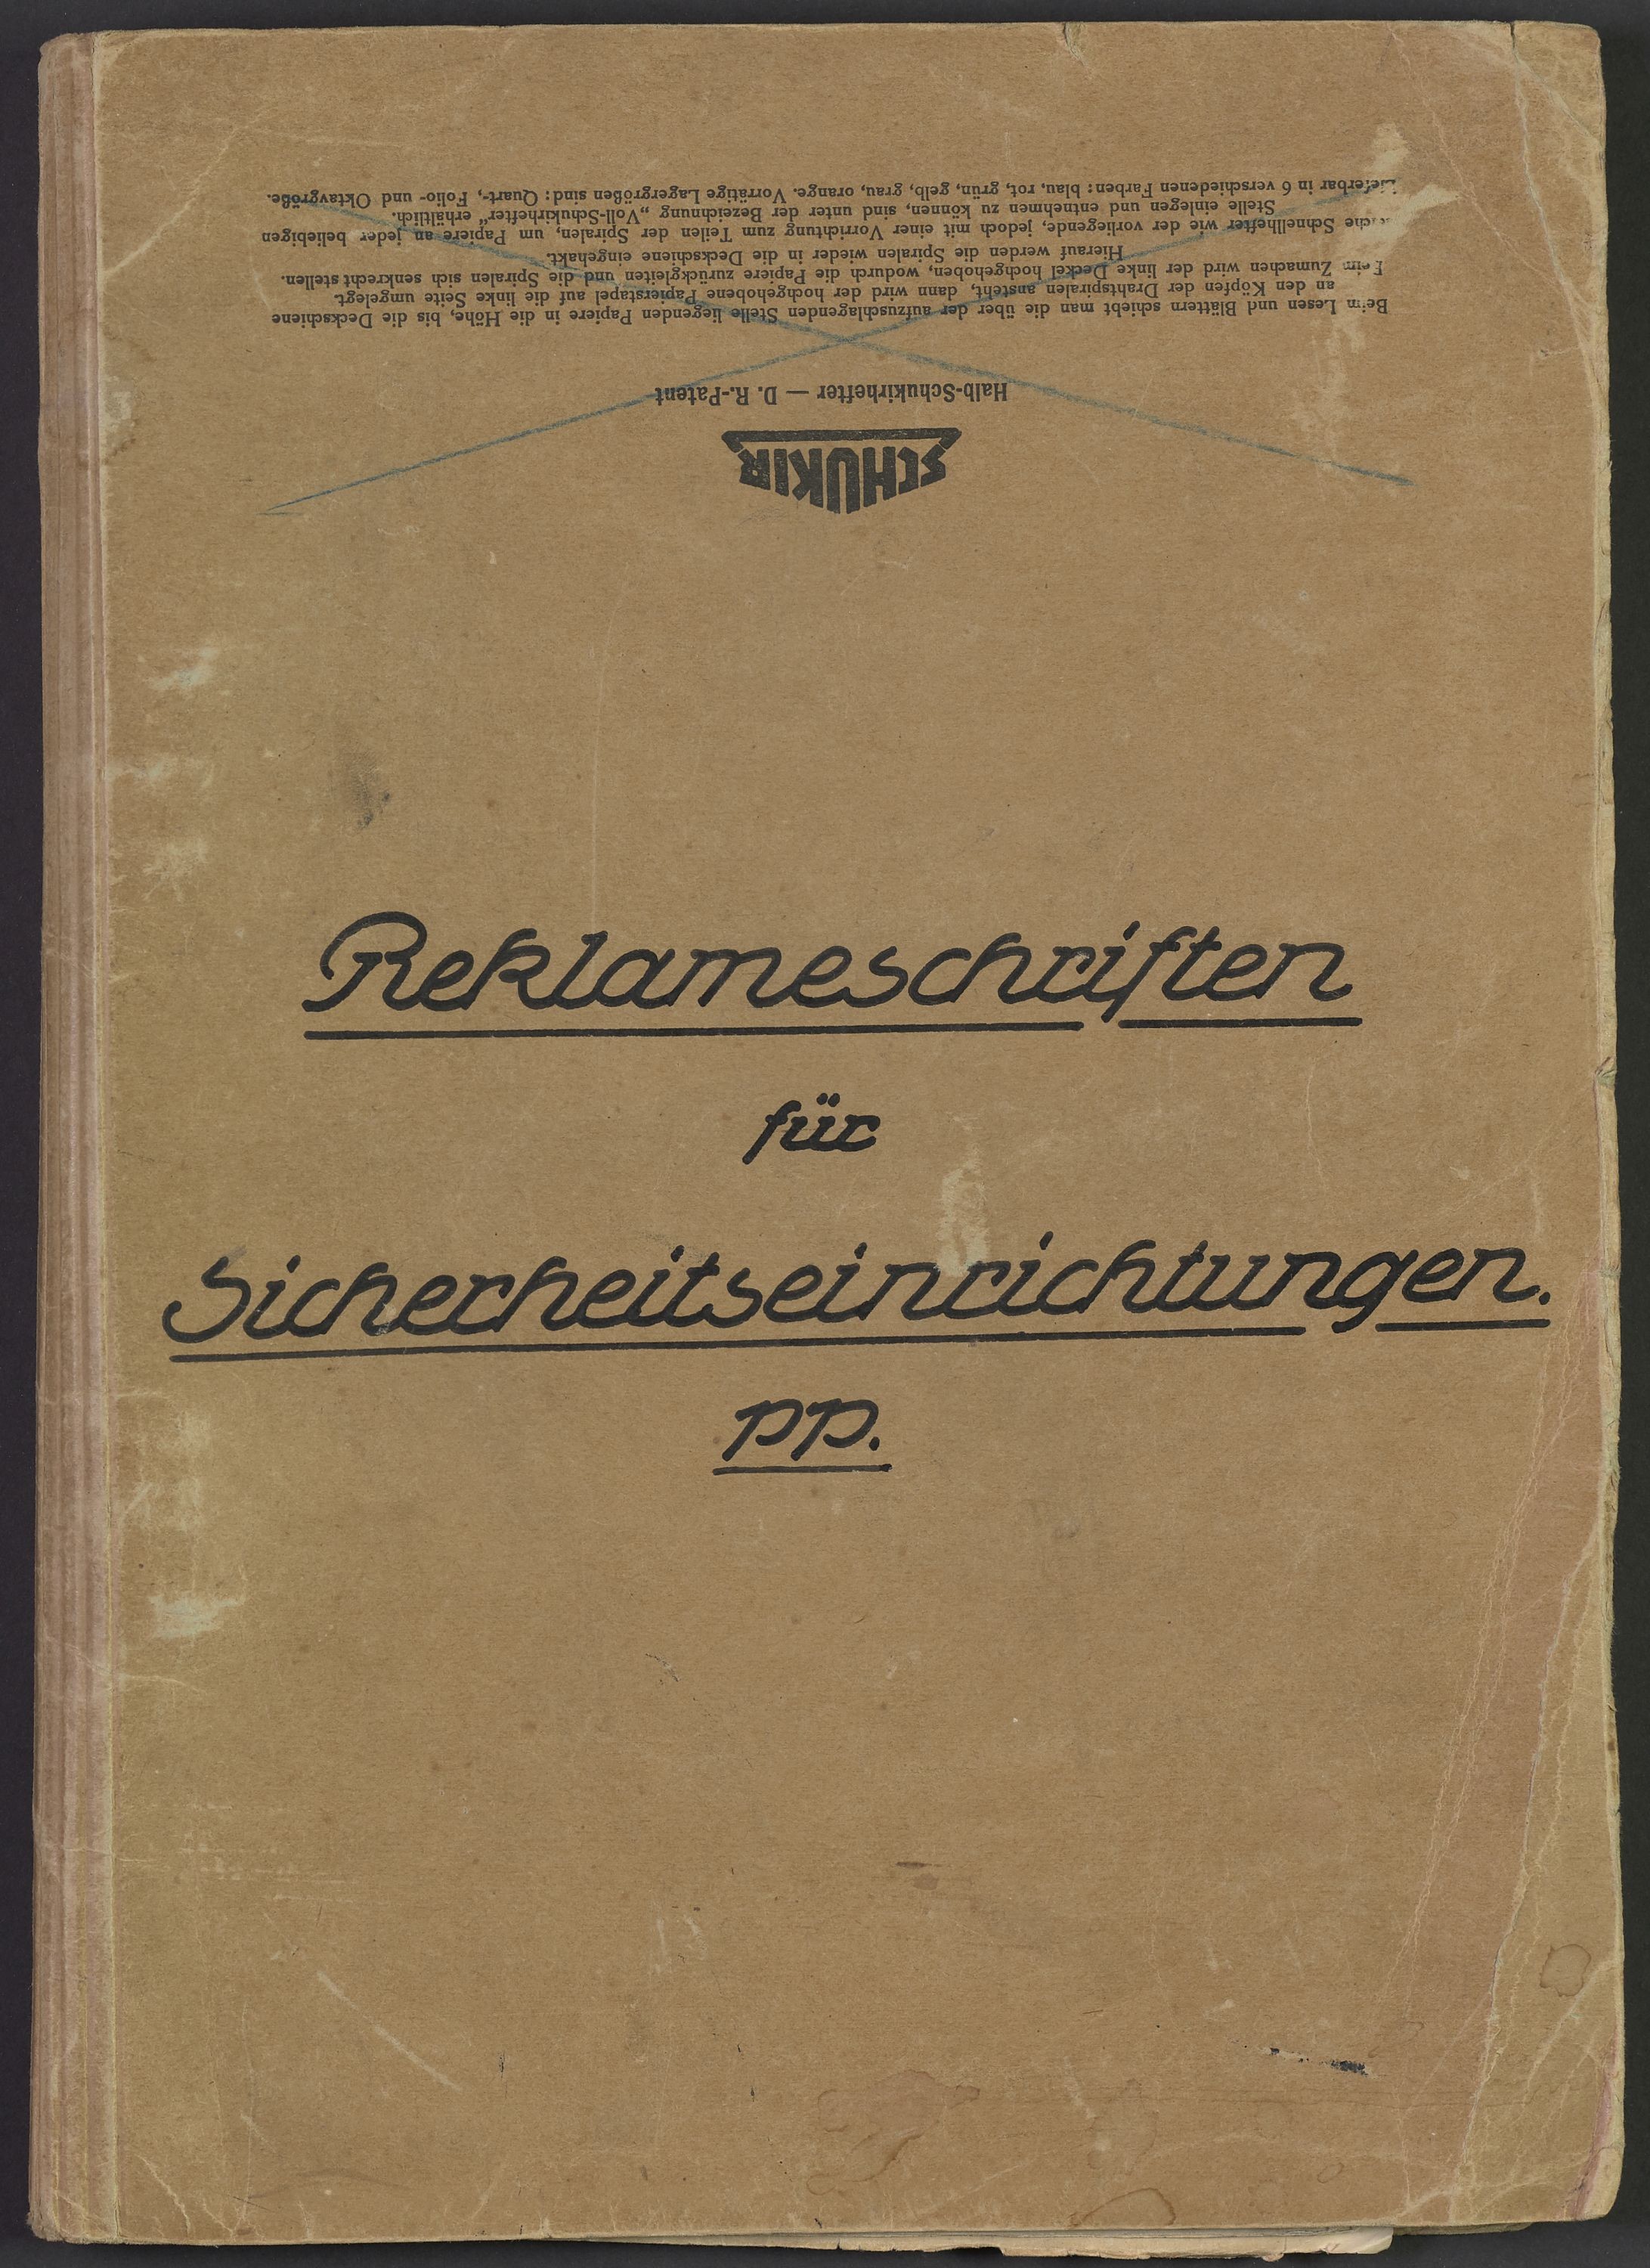 Hefter "Reklameschriften für Sicherheitseinrichtungen" 1918/1919 (Polizeidirektion Dresden RR-F)